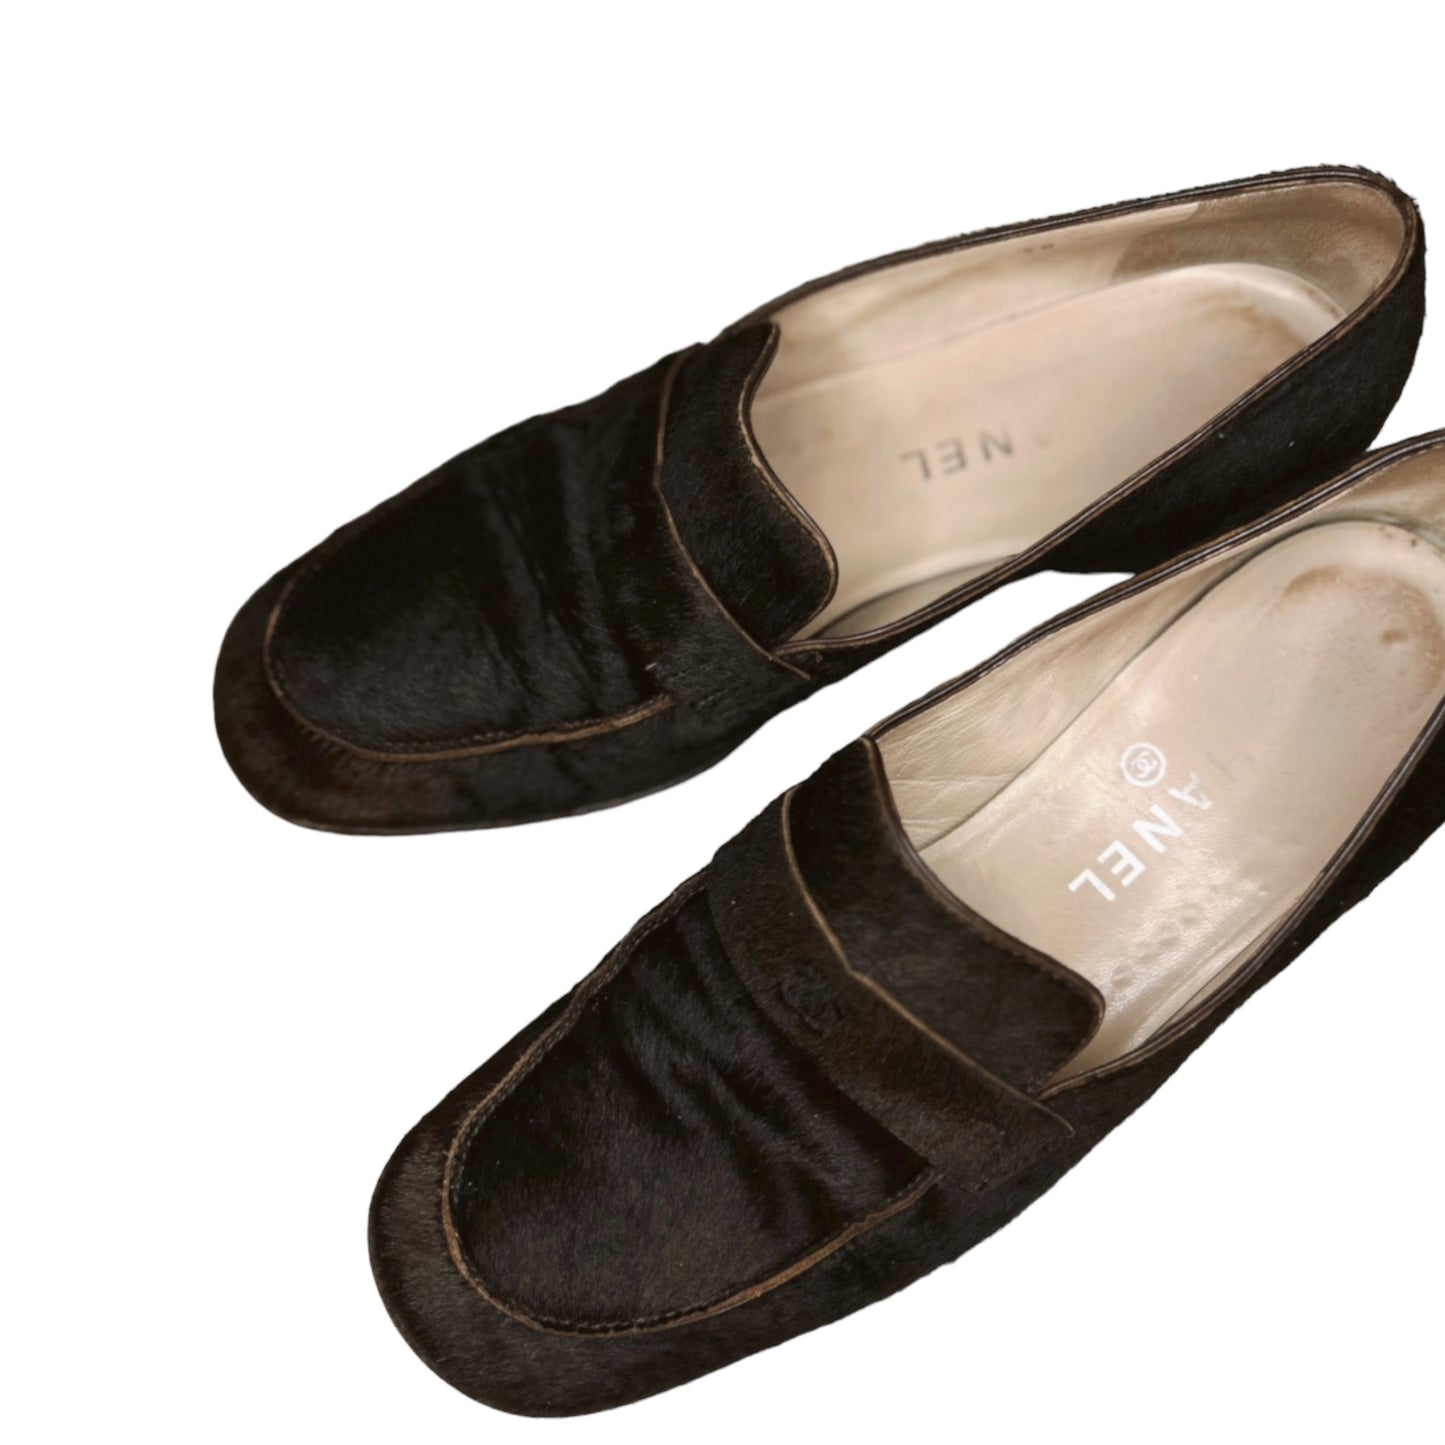 Vintage Chanel brown loafer